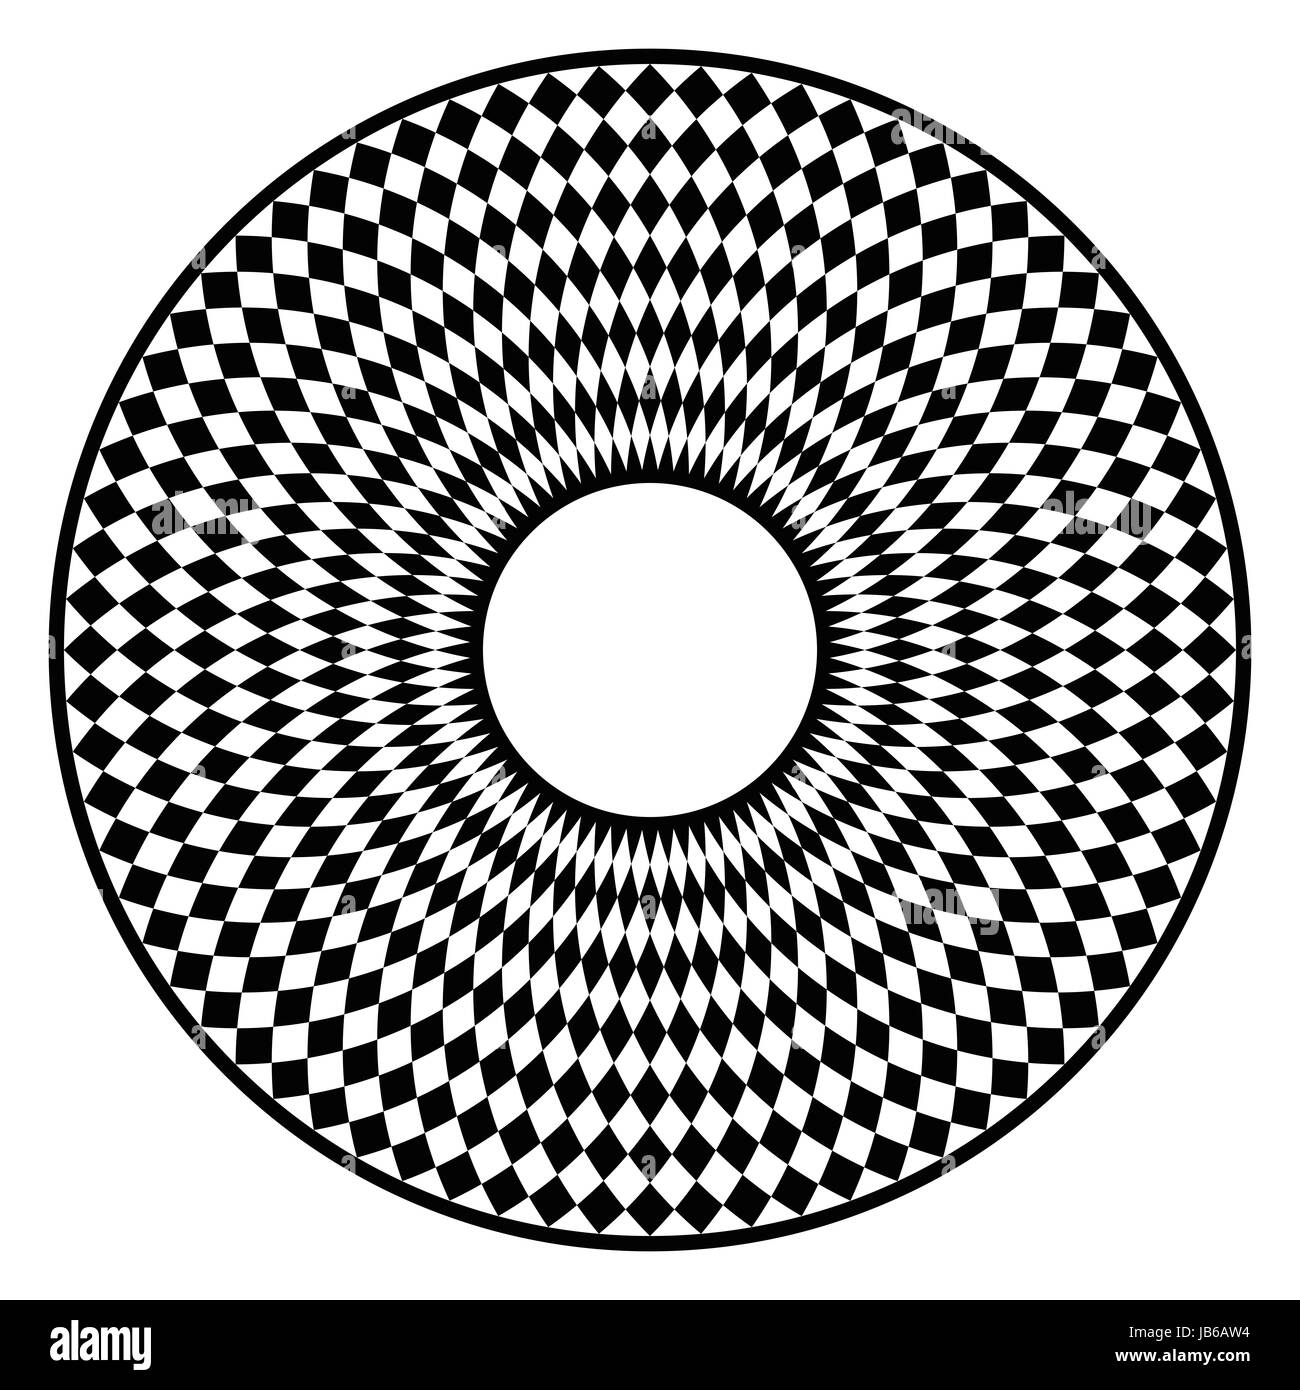 Circolare di scacchiera. Disco nero con motivo a scacchi in un cerchio con piastrelle di forma romboidale. Crea un'illusione ottica di movimento. Foto Stock